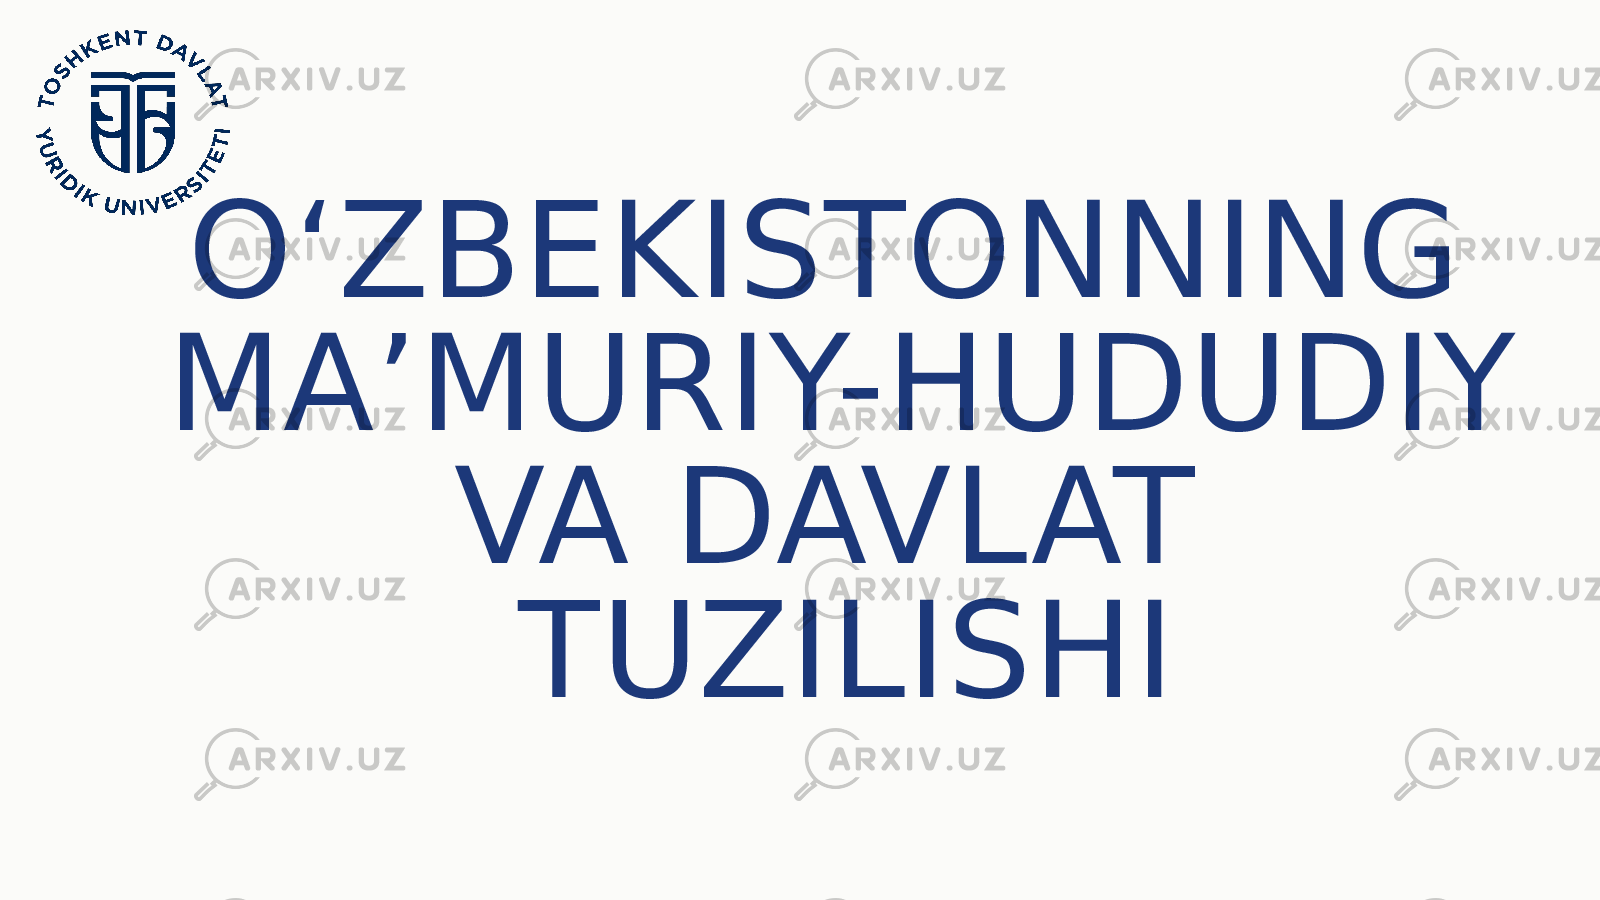 OʻZBEKISTONNING MAʼMURIY-HUDUDIY VA DAVLAT TUZILISHI 